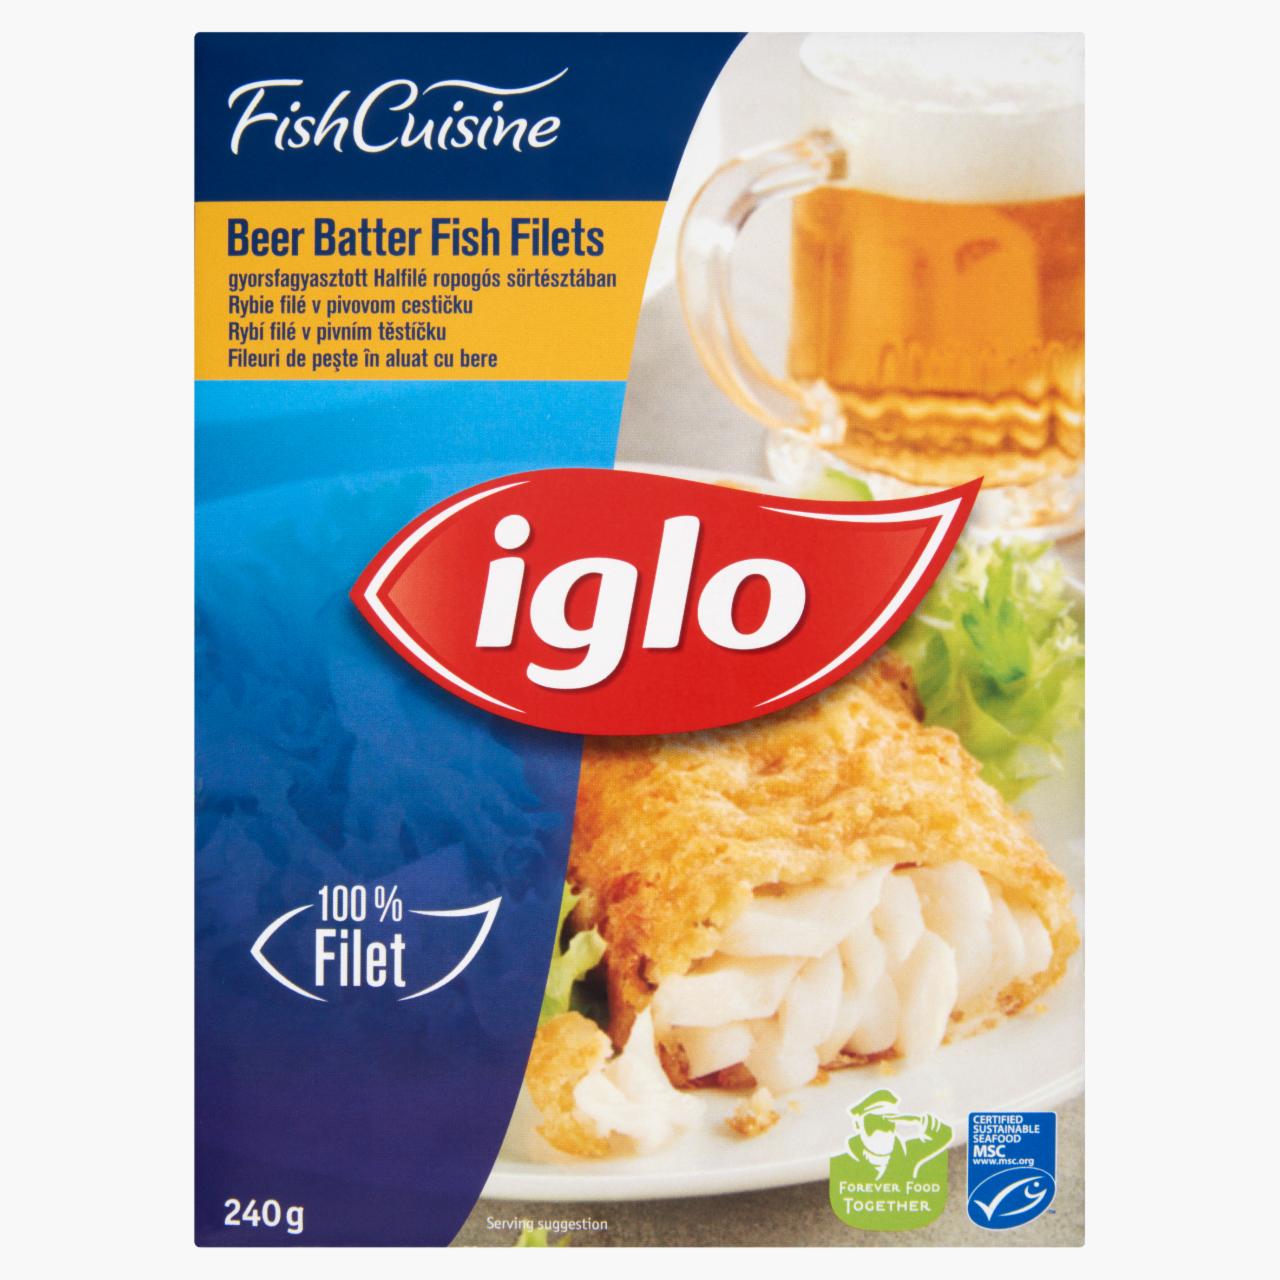 Képek - Iglo Fish Cuisine gyorsfagyasztott halfilé ropogós sörtésztában 240 g